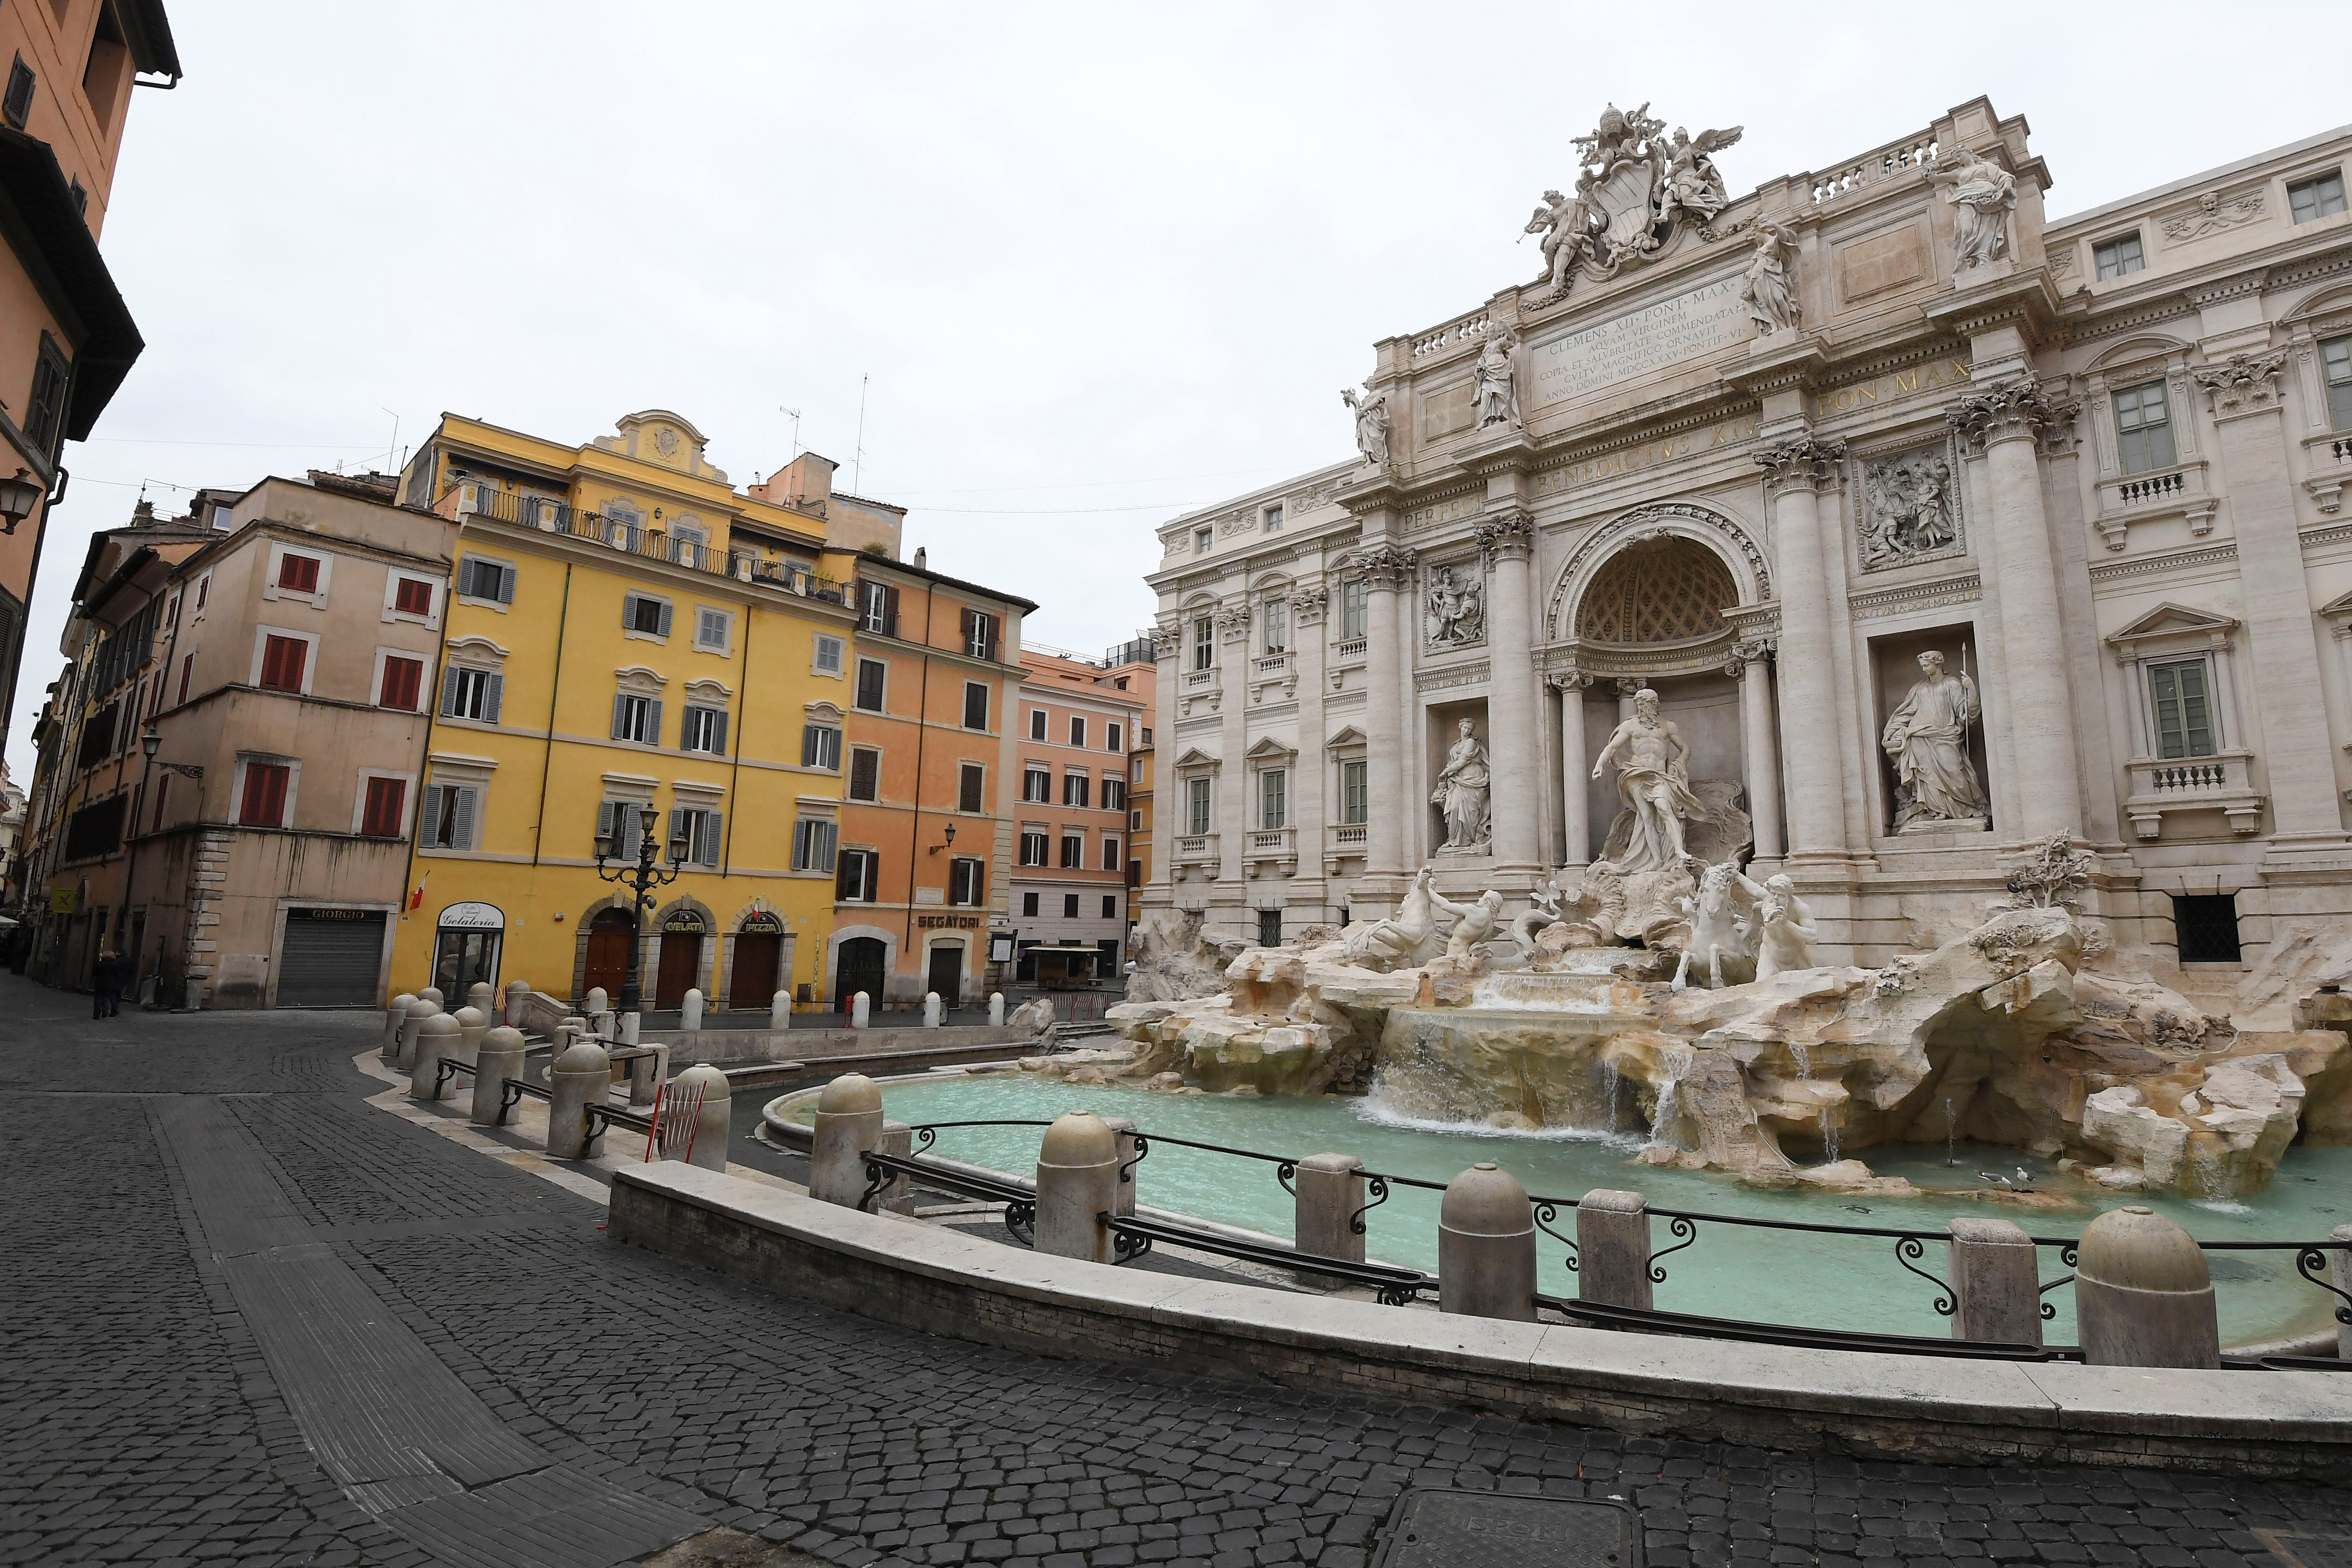 Las fuentes de Roma, como la de Trevi, parecen confundirse cada vez más con piscinas al aire libre (REUTERS/Alberto Lingria)